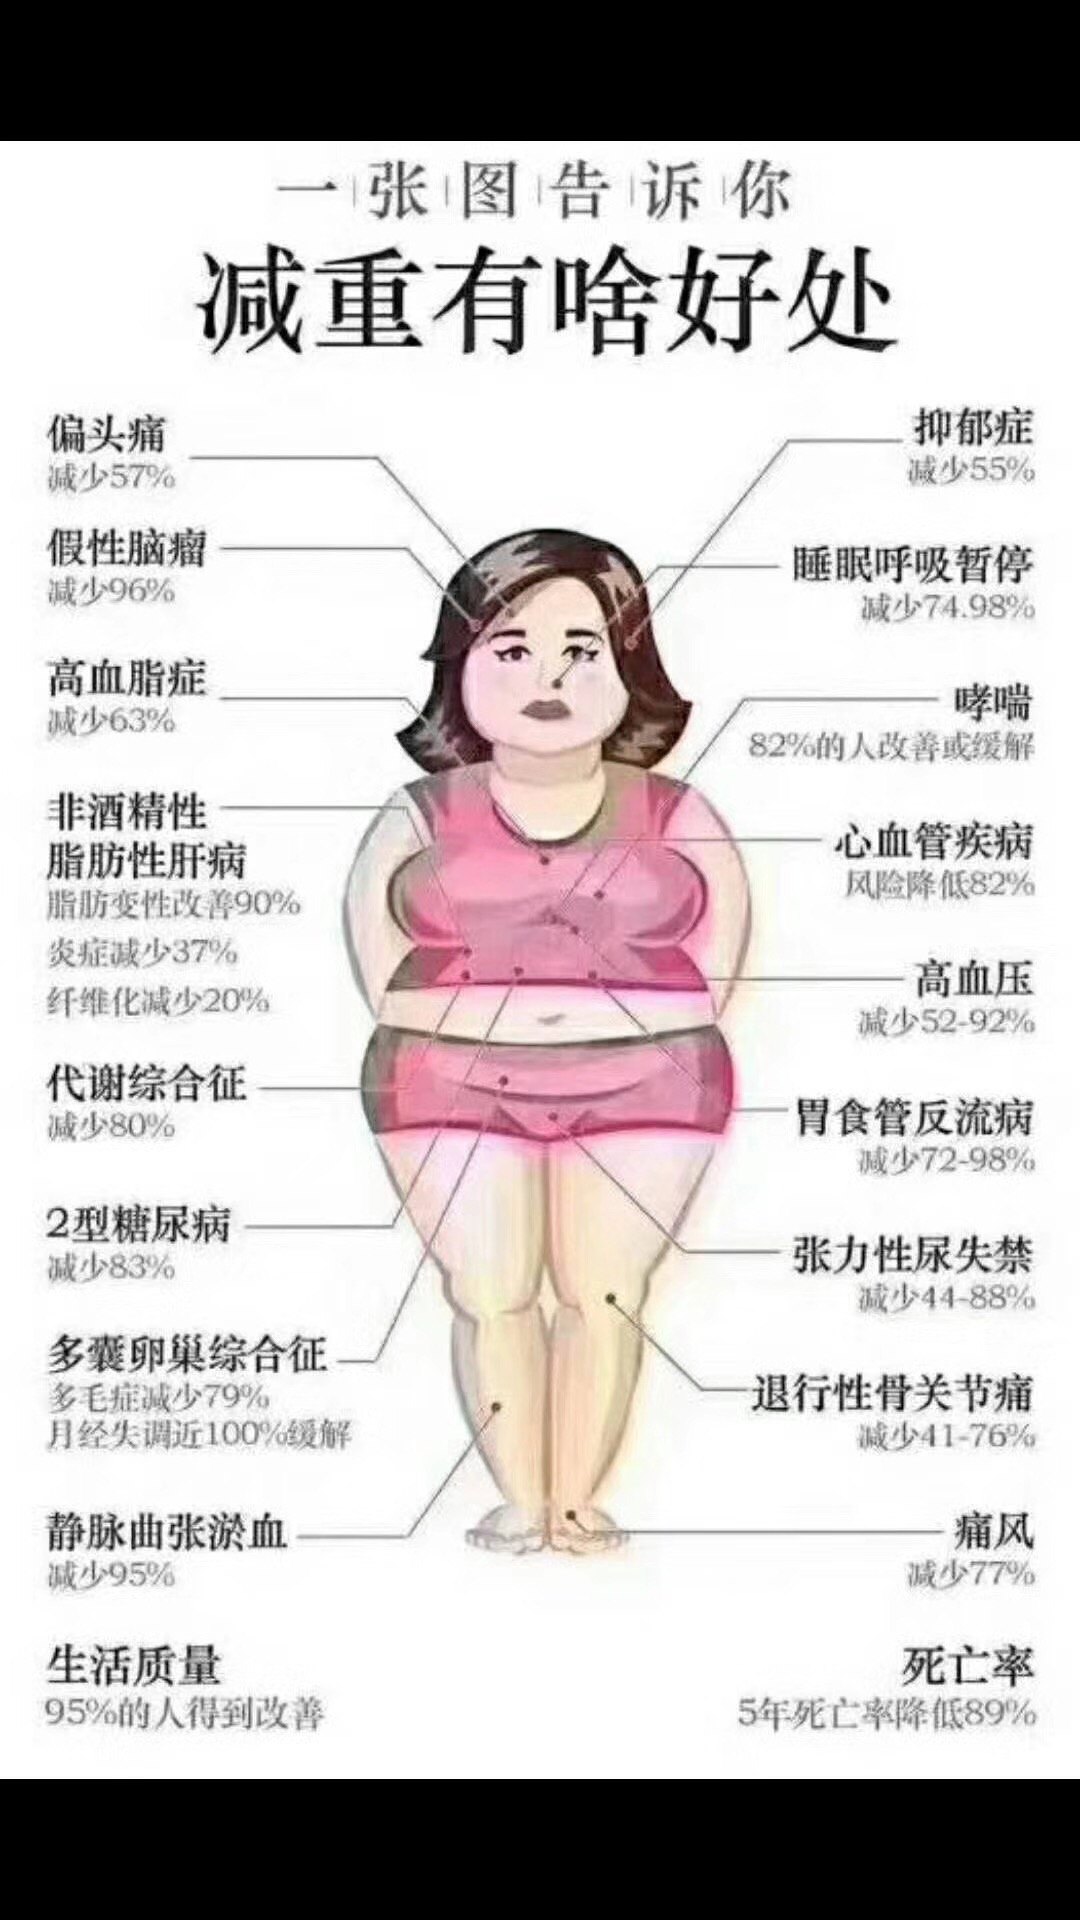 为什么肥胖的人很难减重? 